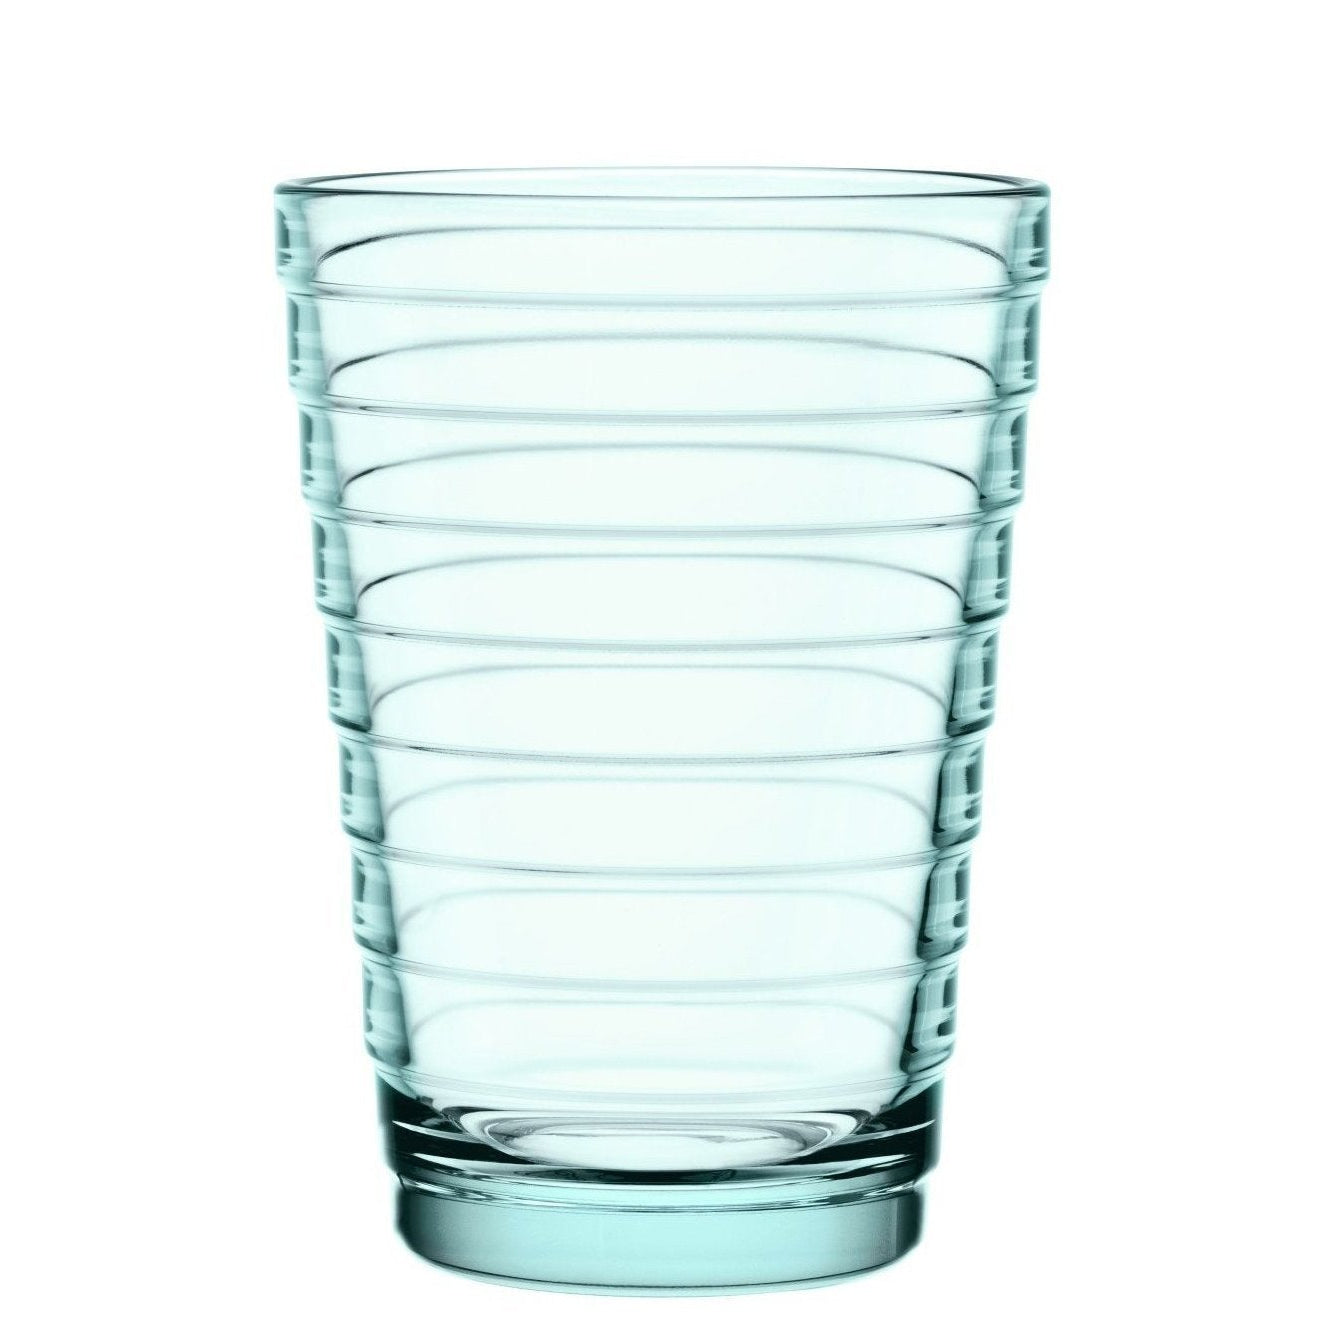 Iittala Aino Aalto Brille Wassergrün 2 PCS, 33Cl